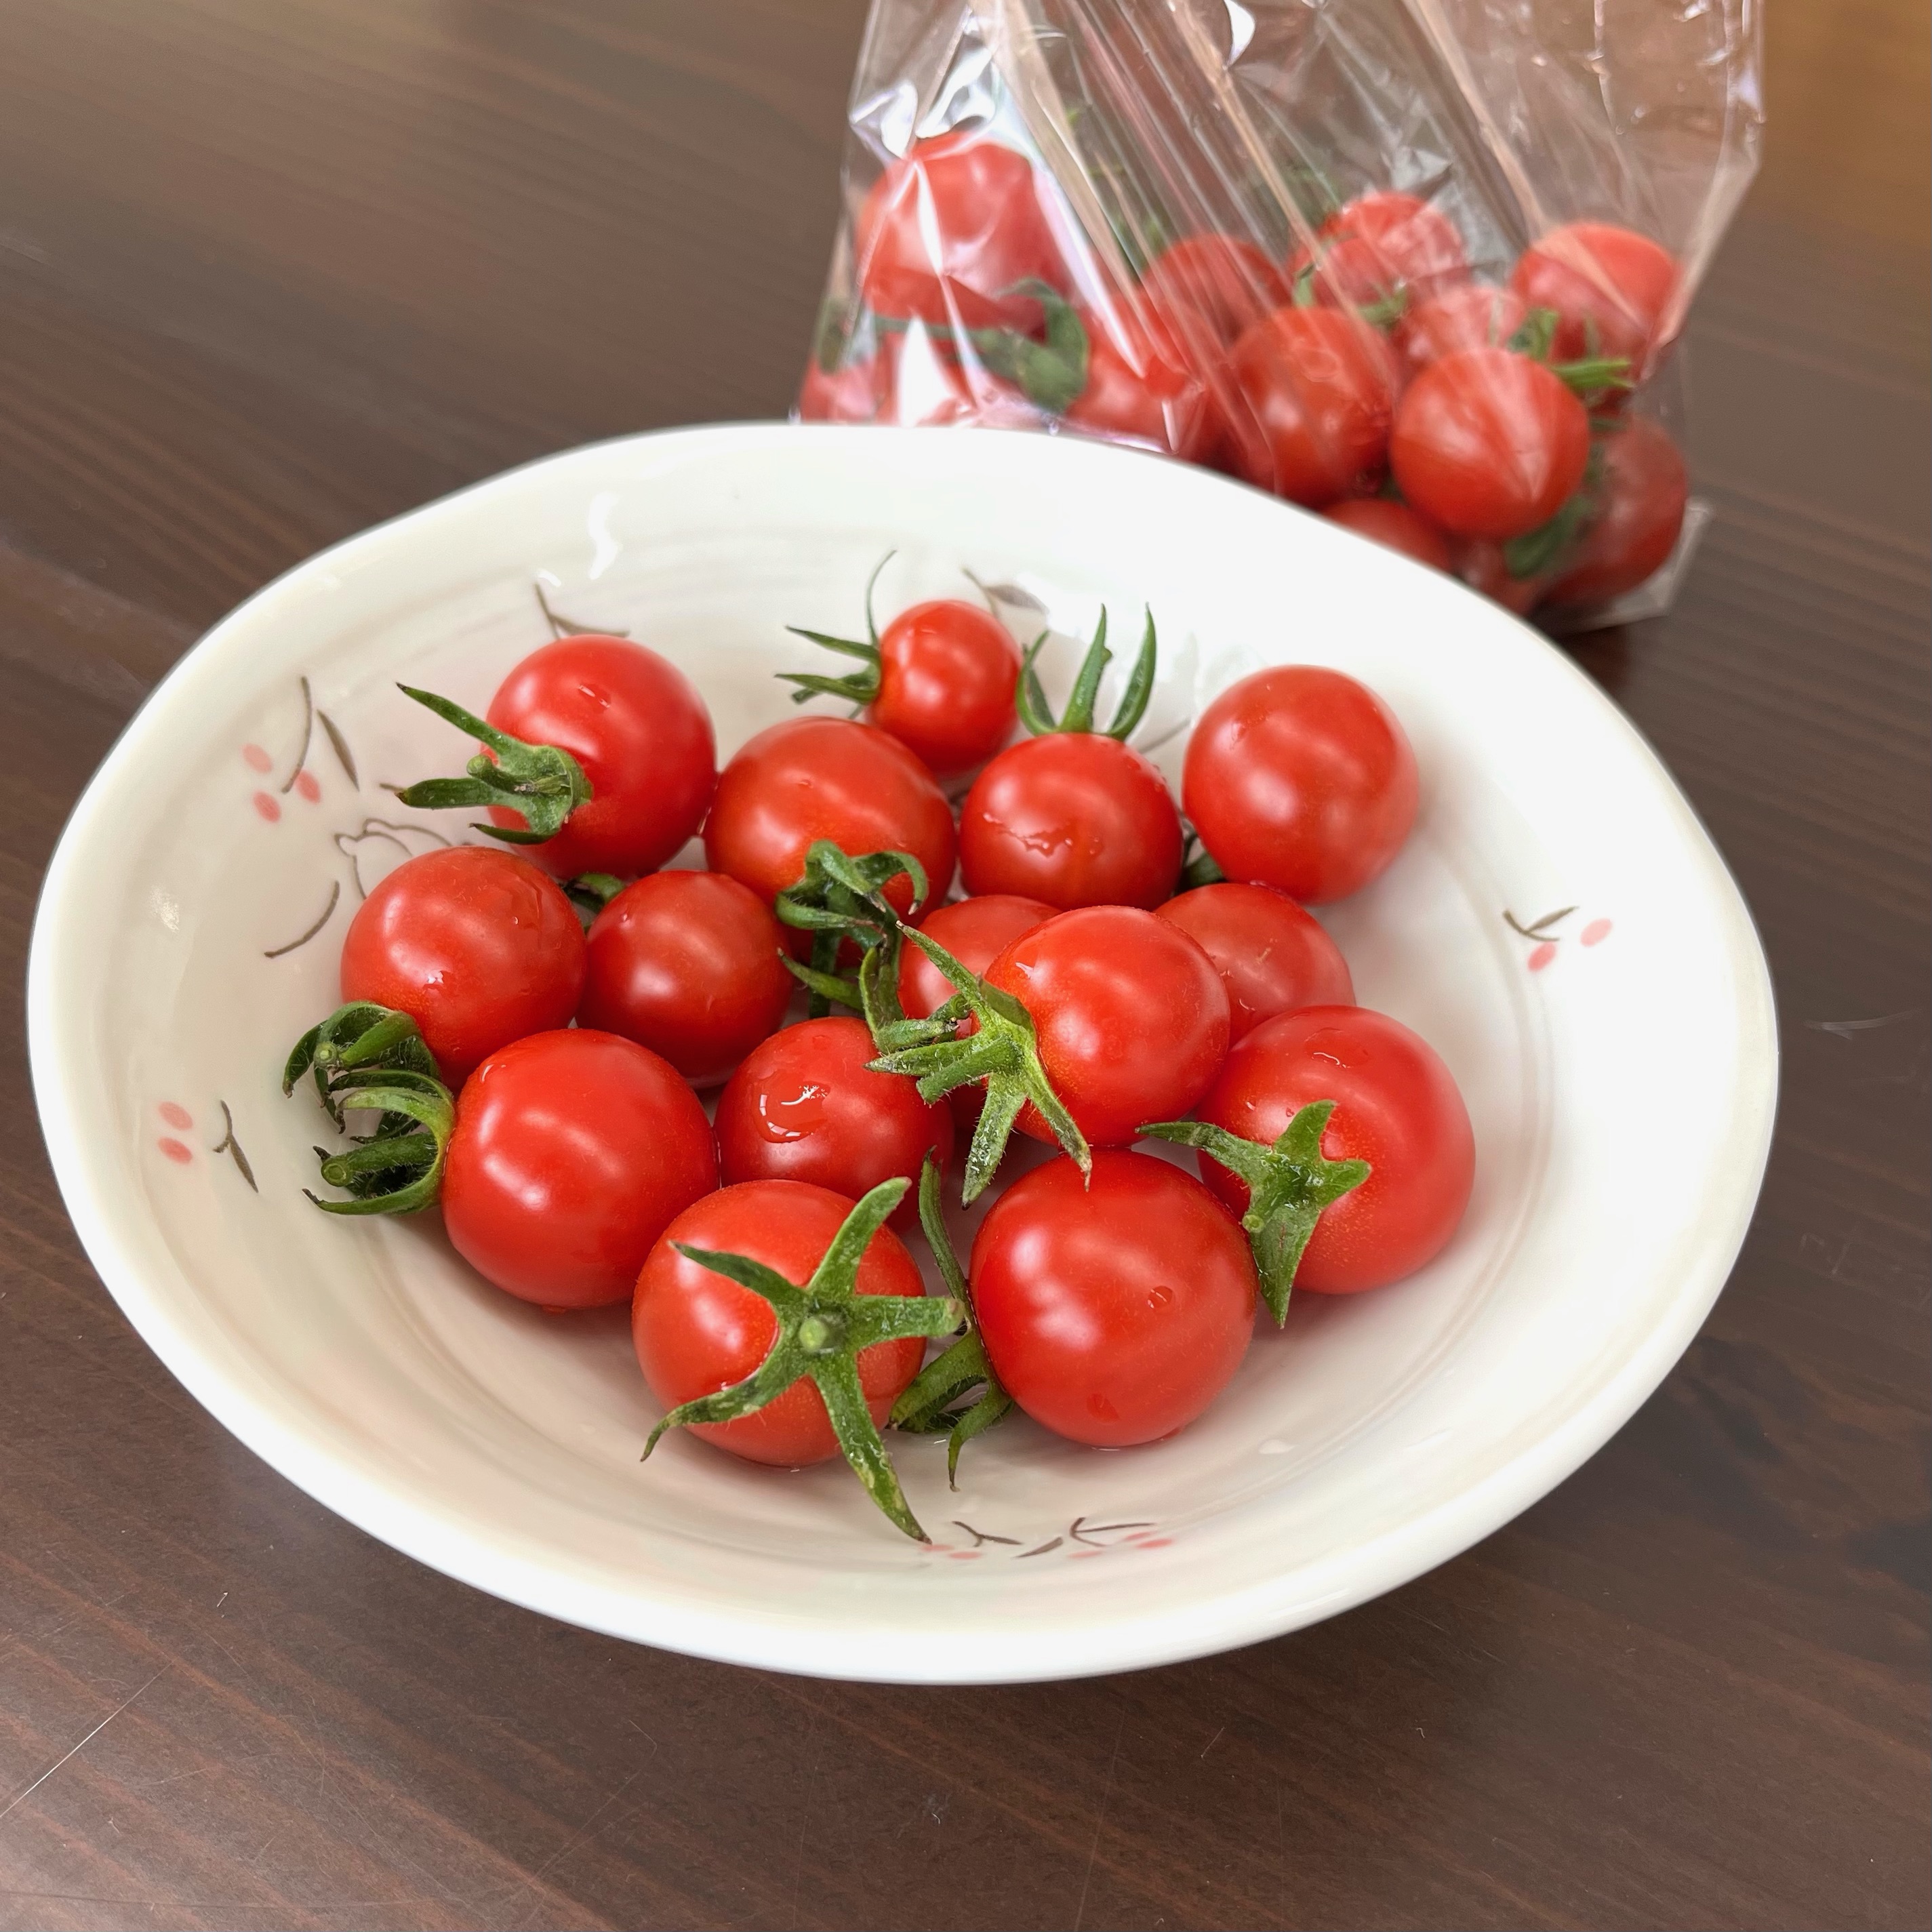 めちゃくちゃ美味しいプチトマト アイキャッチ画像